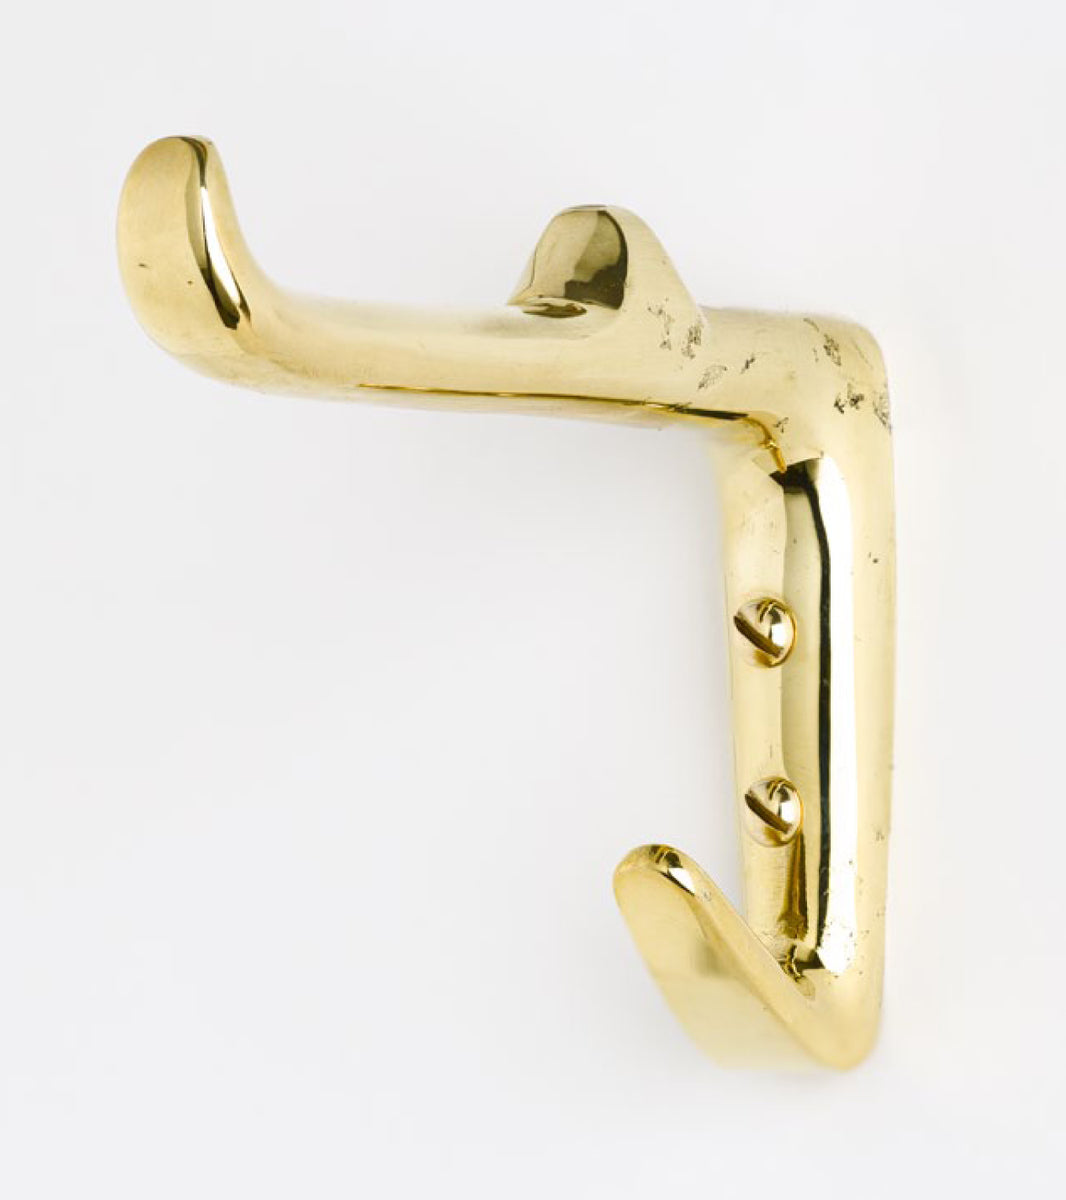 Double hanger wall Hook brass model 4965 designed by Carl Auböck in Vienna Europe 